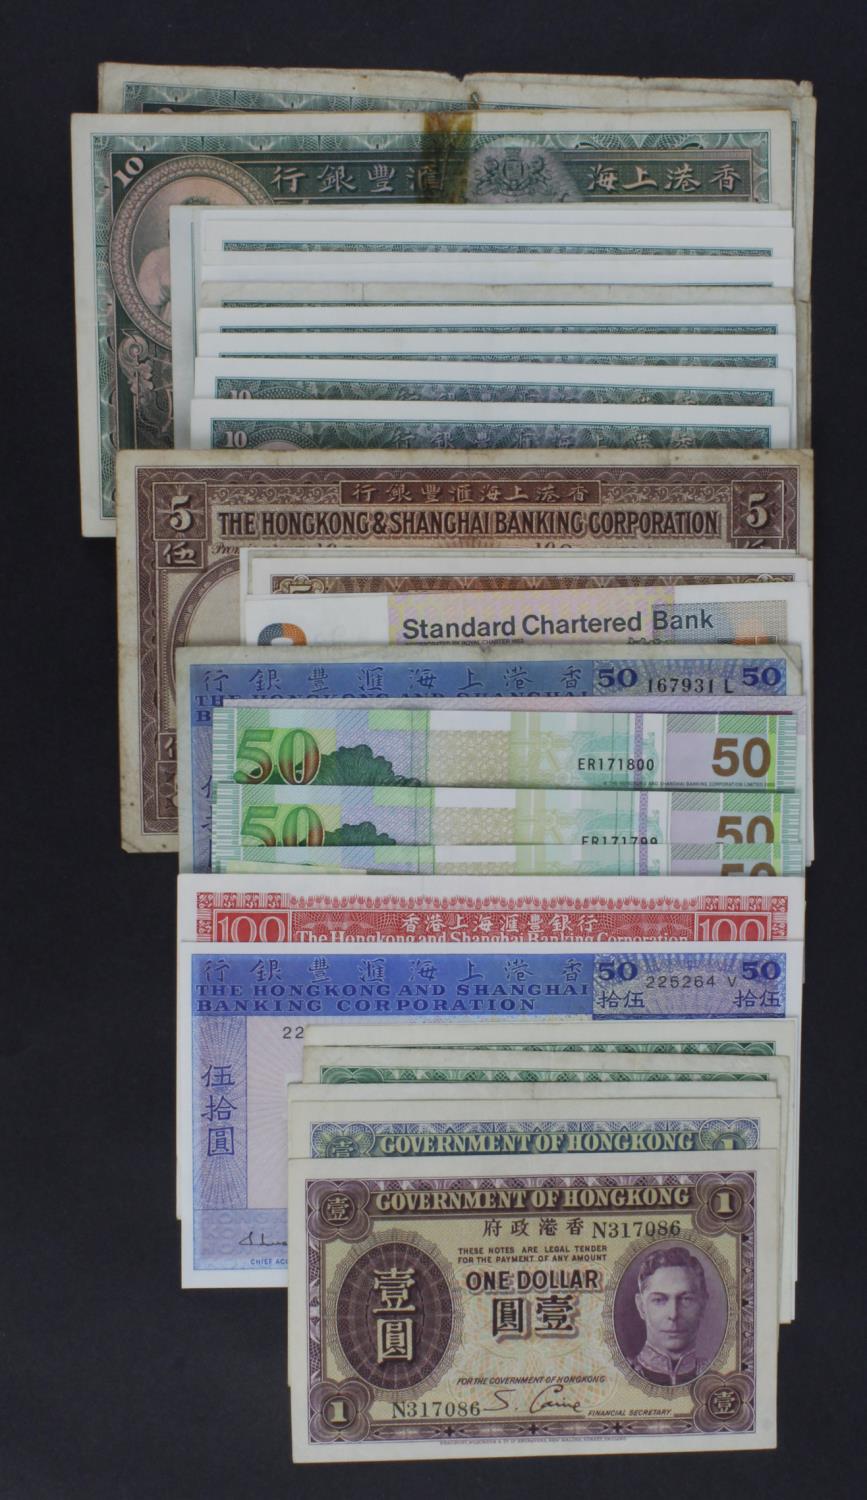 Hong Kong (62), Hongkong and Shanghai Banking Corporation 100 Dollars 1981, 50 Dollars (9) date - Image 4 of 4